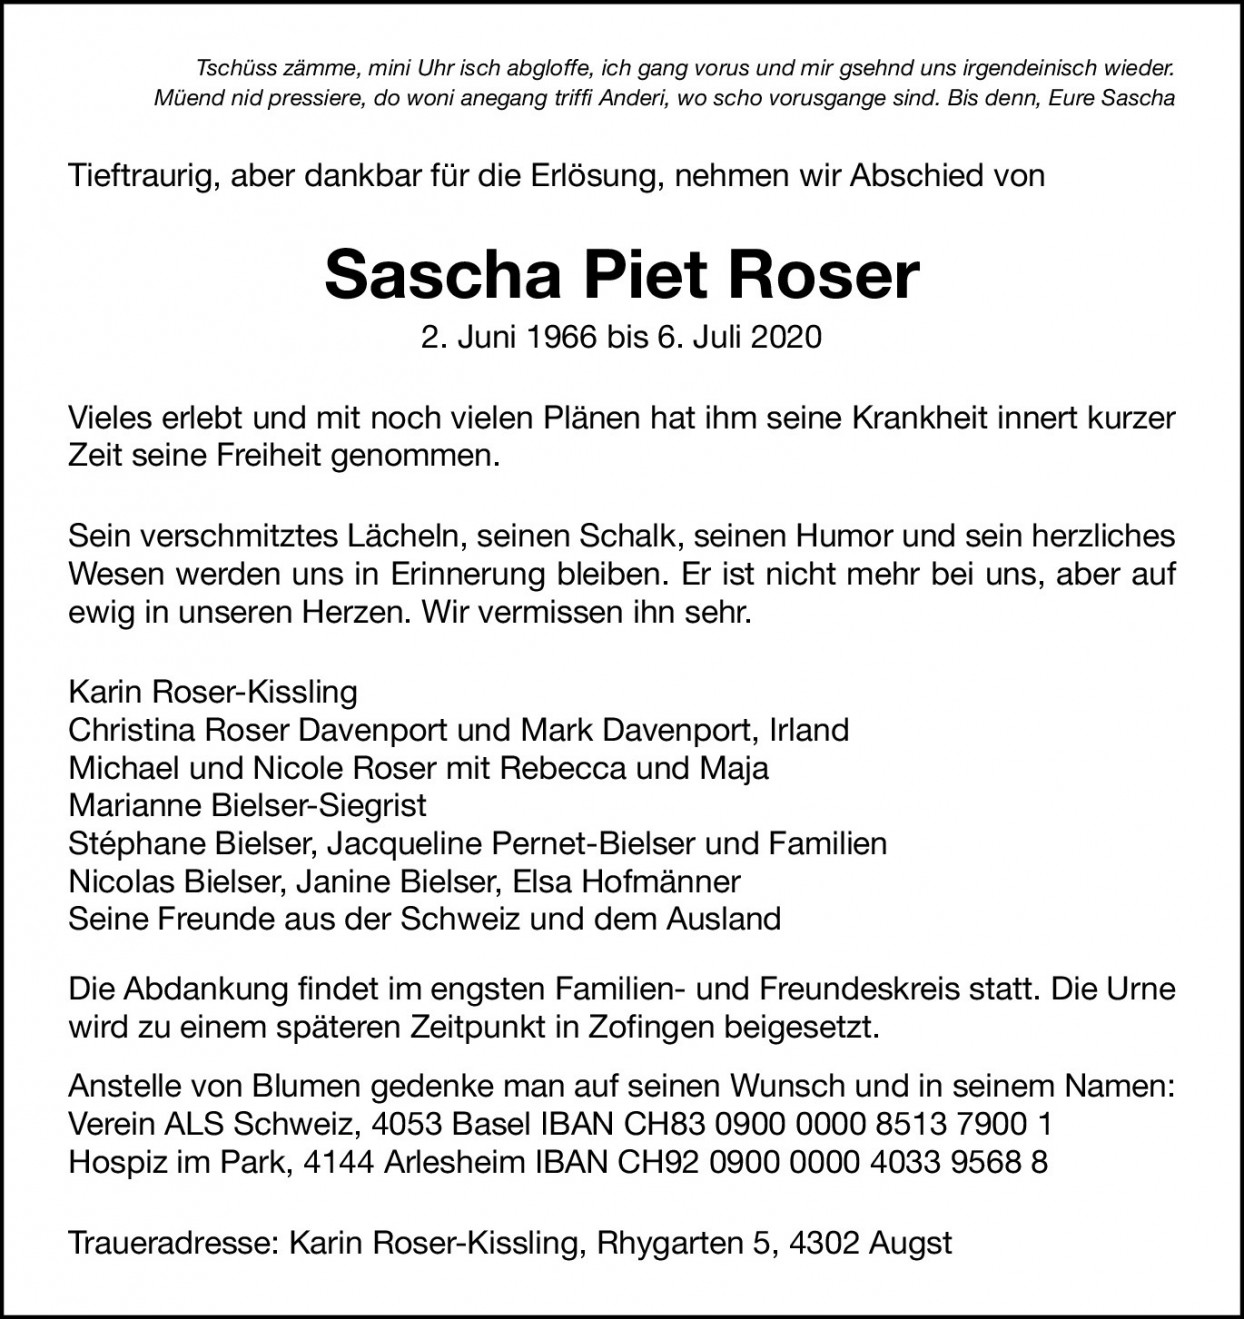 Sascha Piet Roser